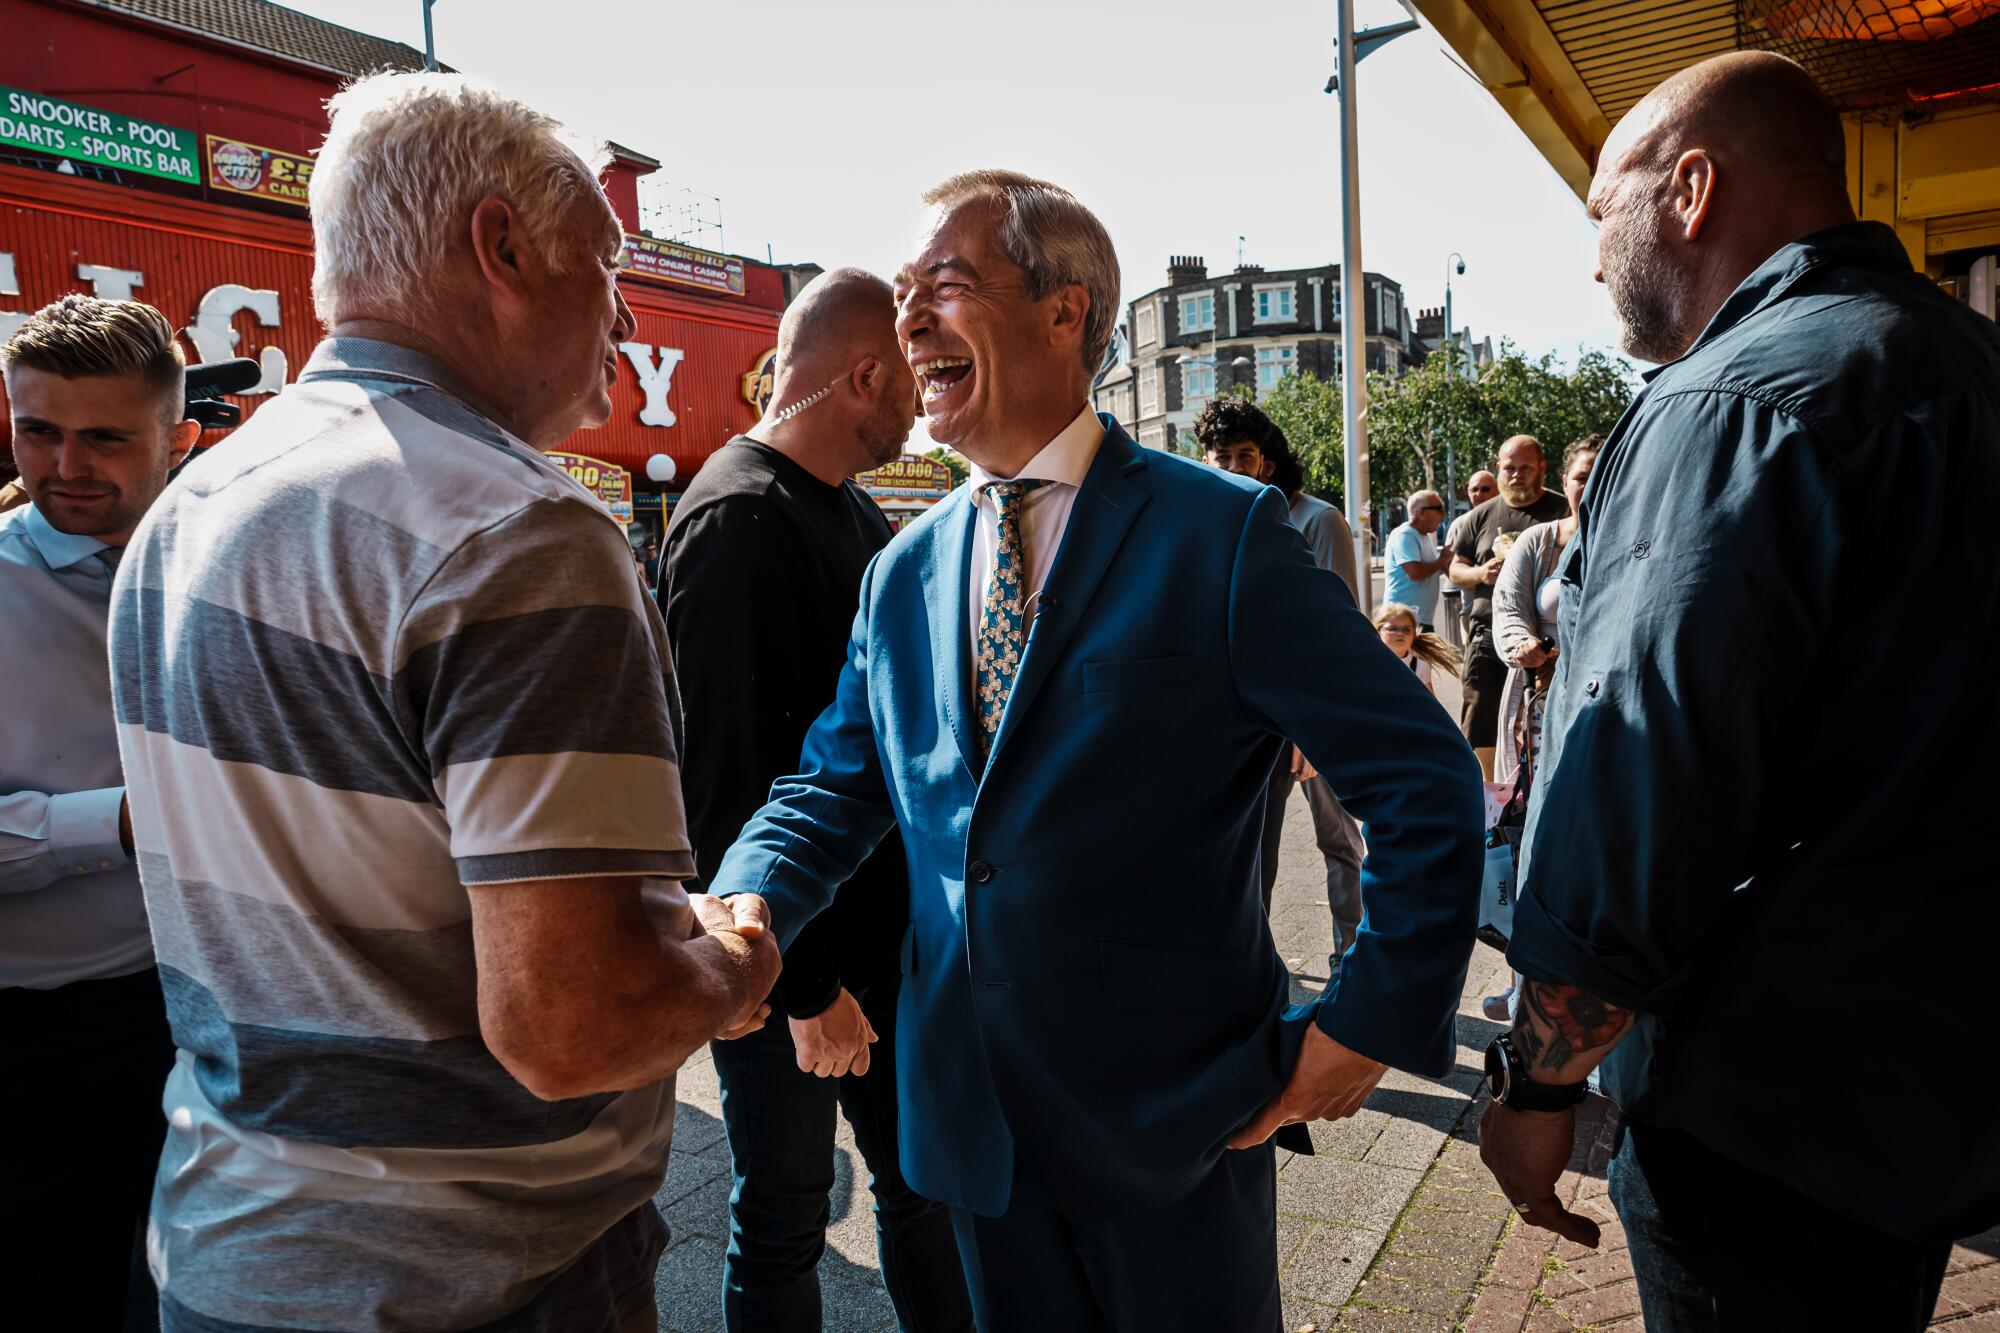 Nigel Farage sorri largamente e aperta a mão de um homem. 